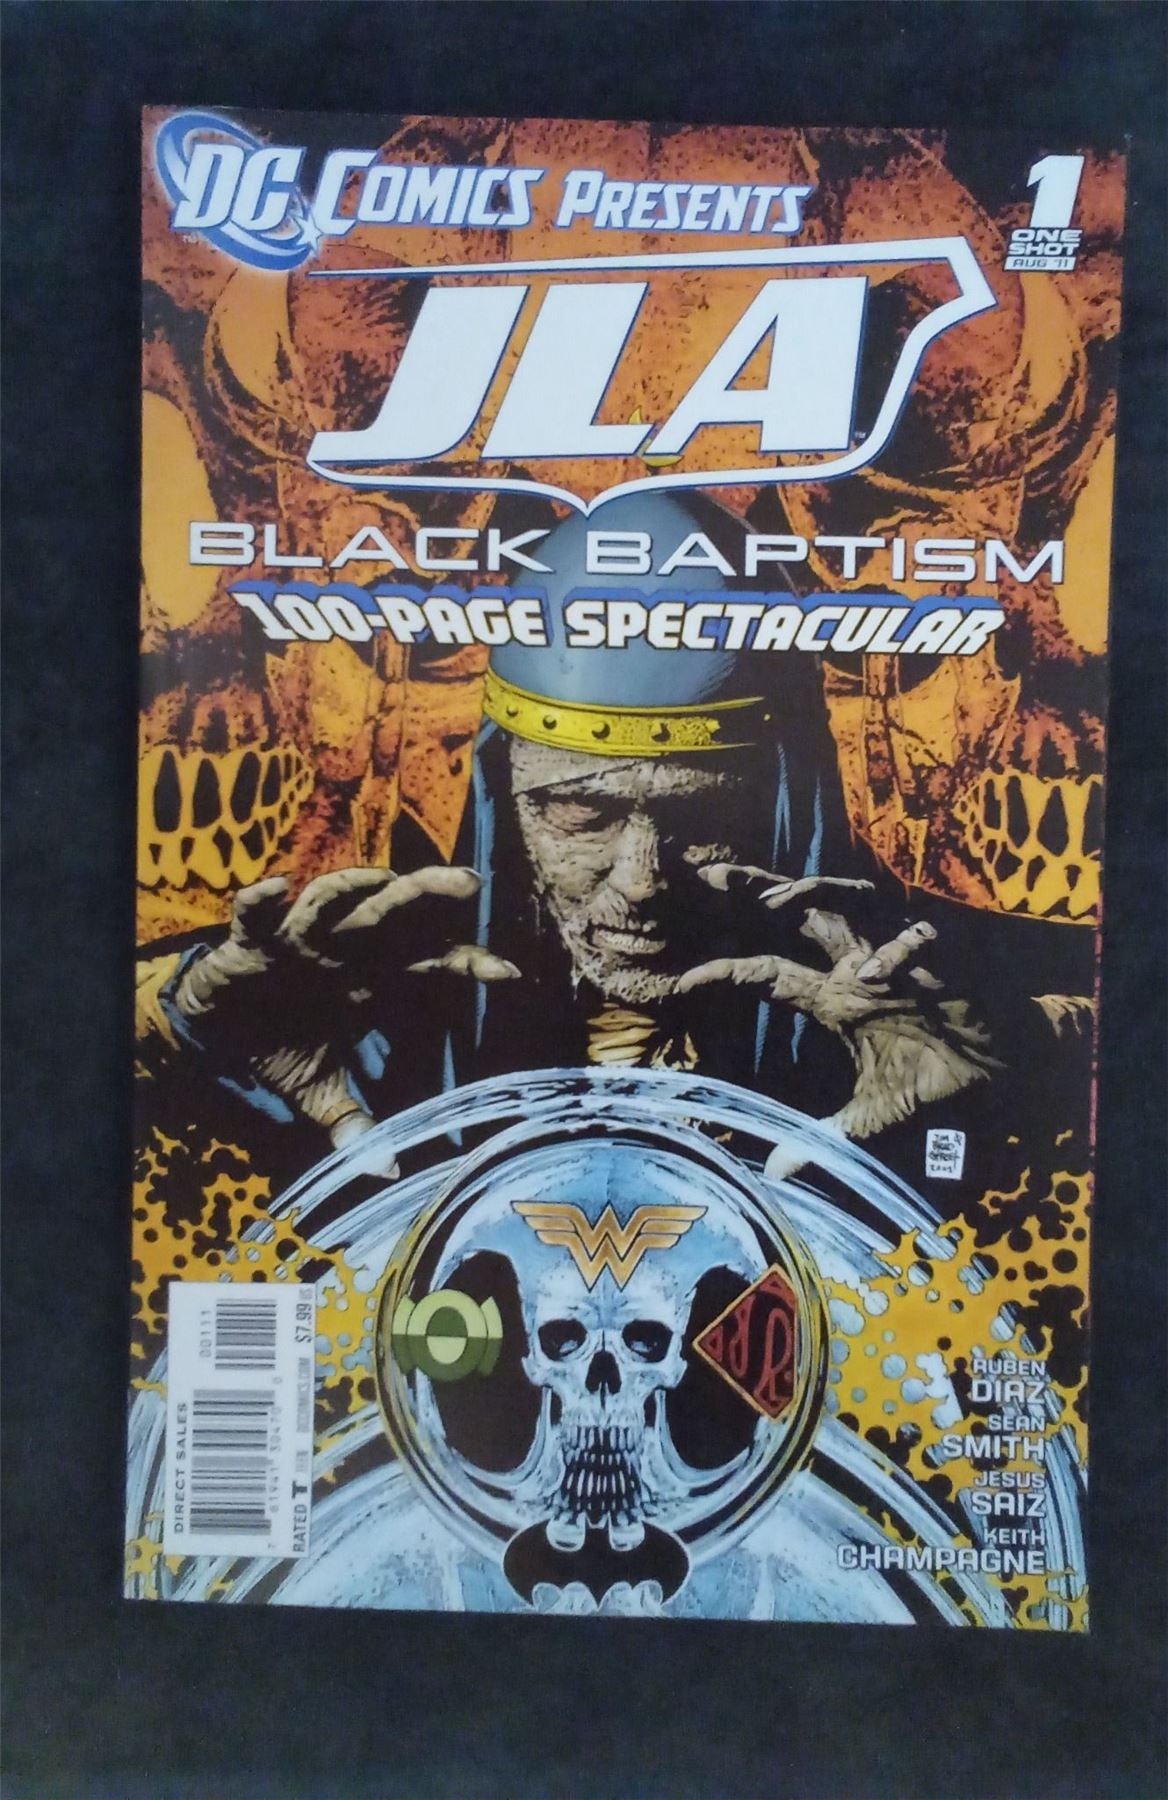 DC Comics Presents: Justice League of America - Black Baptism 2011 dc-comics Comic Book